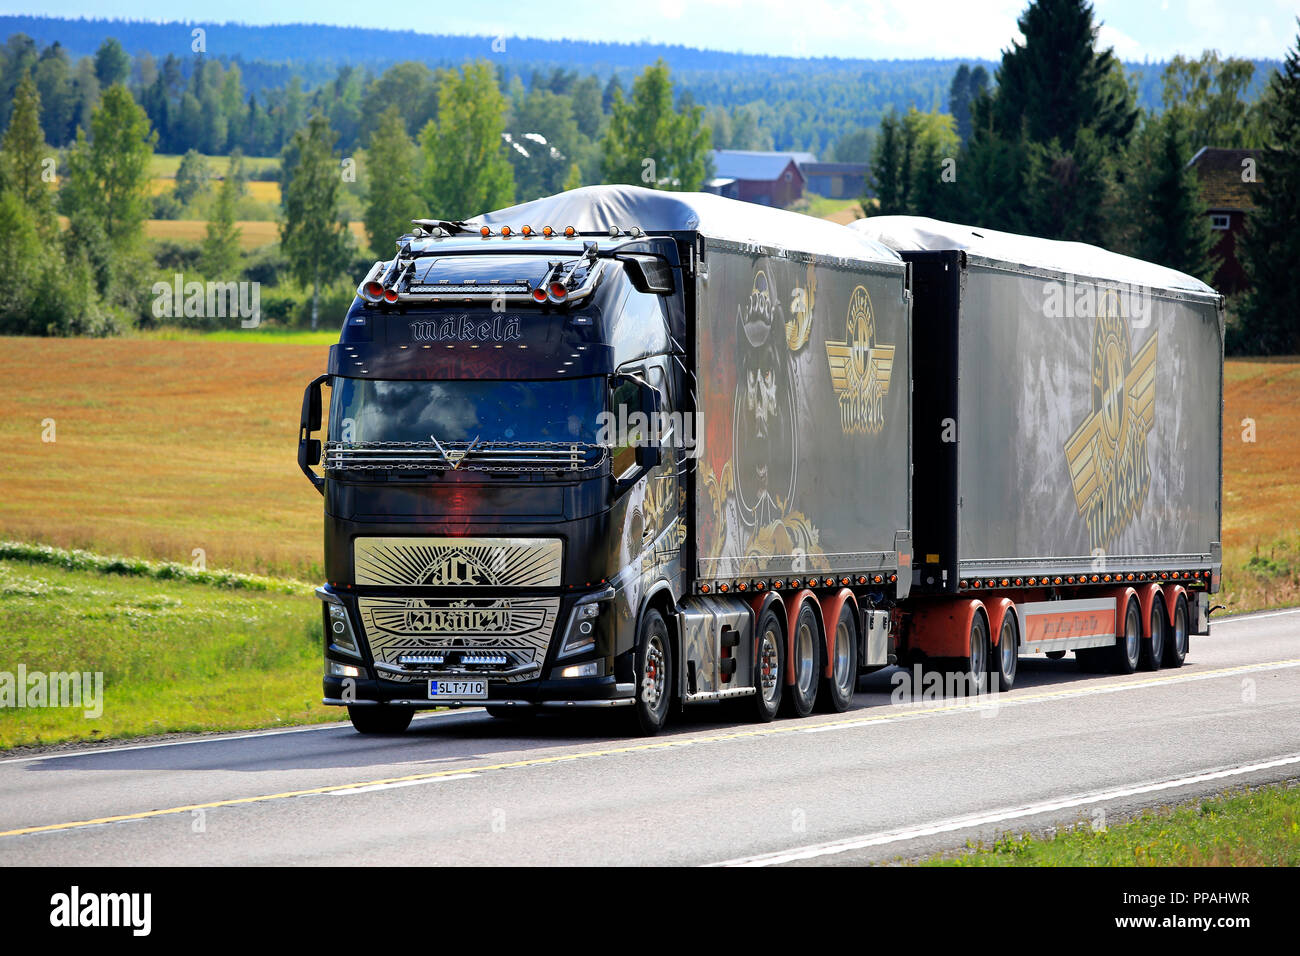 JAMSA, Finnland - 23 AUGUST 2018: Die spektakuläre Show Truck Volvo FH 16 Ace of Spades Transporte Last auf malerische Straße im Zentrum von Finnland im Spätsommer Stockfoto